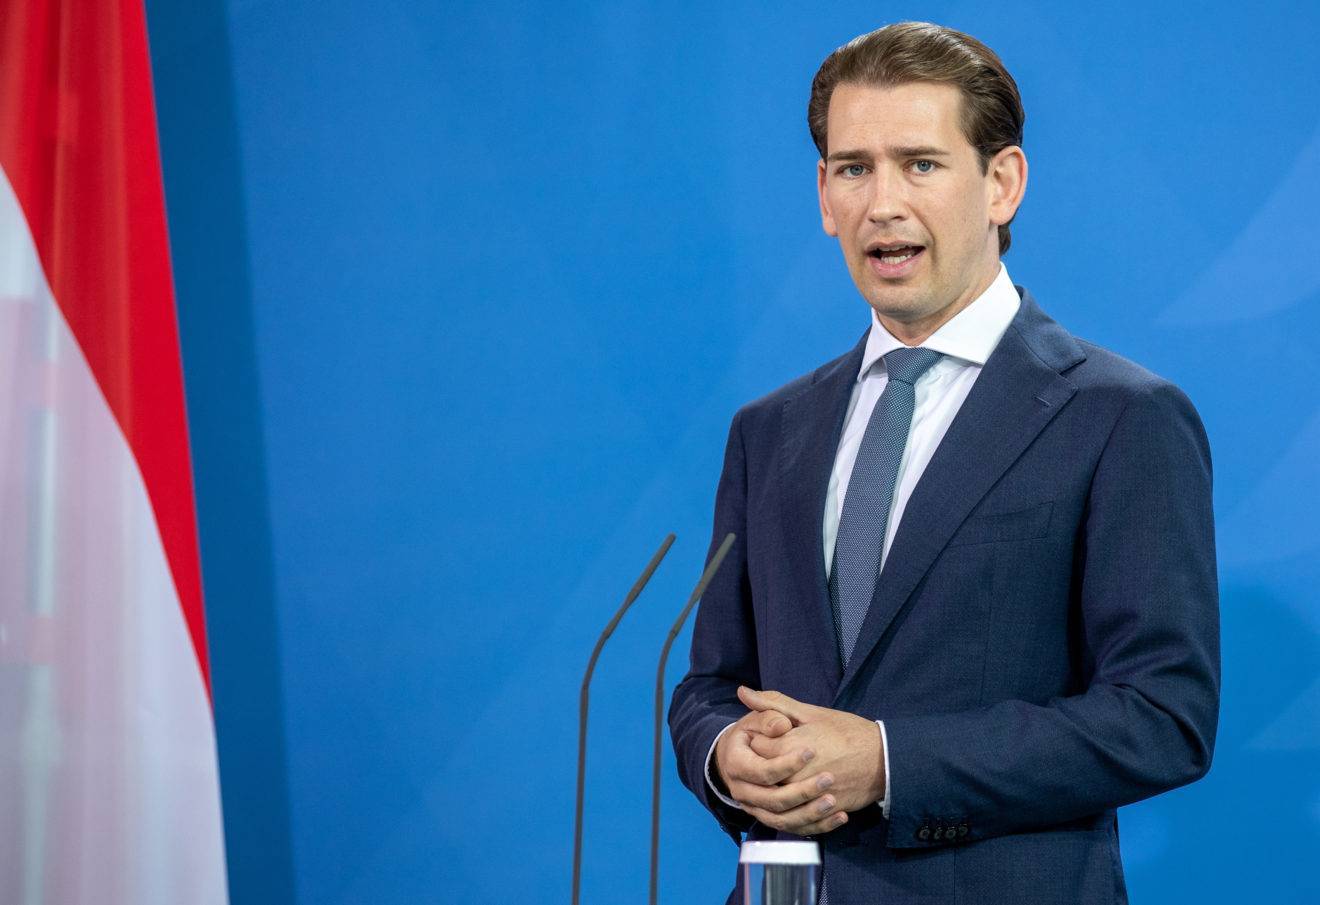 Vizat de o anchetă de corupție, cancelarul Austriei și-a anunțat demisia: ,,Vreau să mă retrag pentru a pune capăt…”